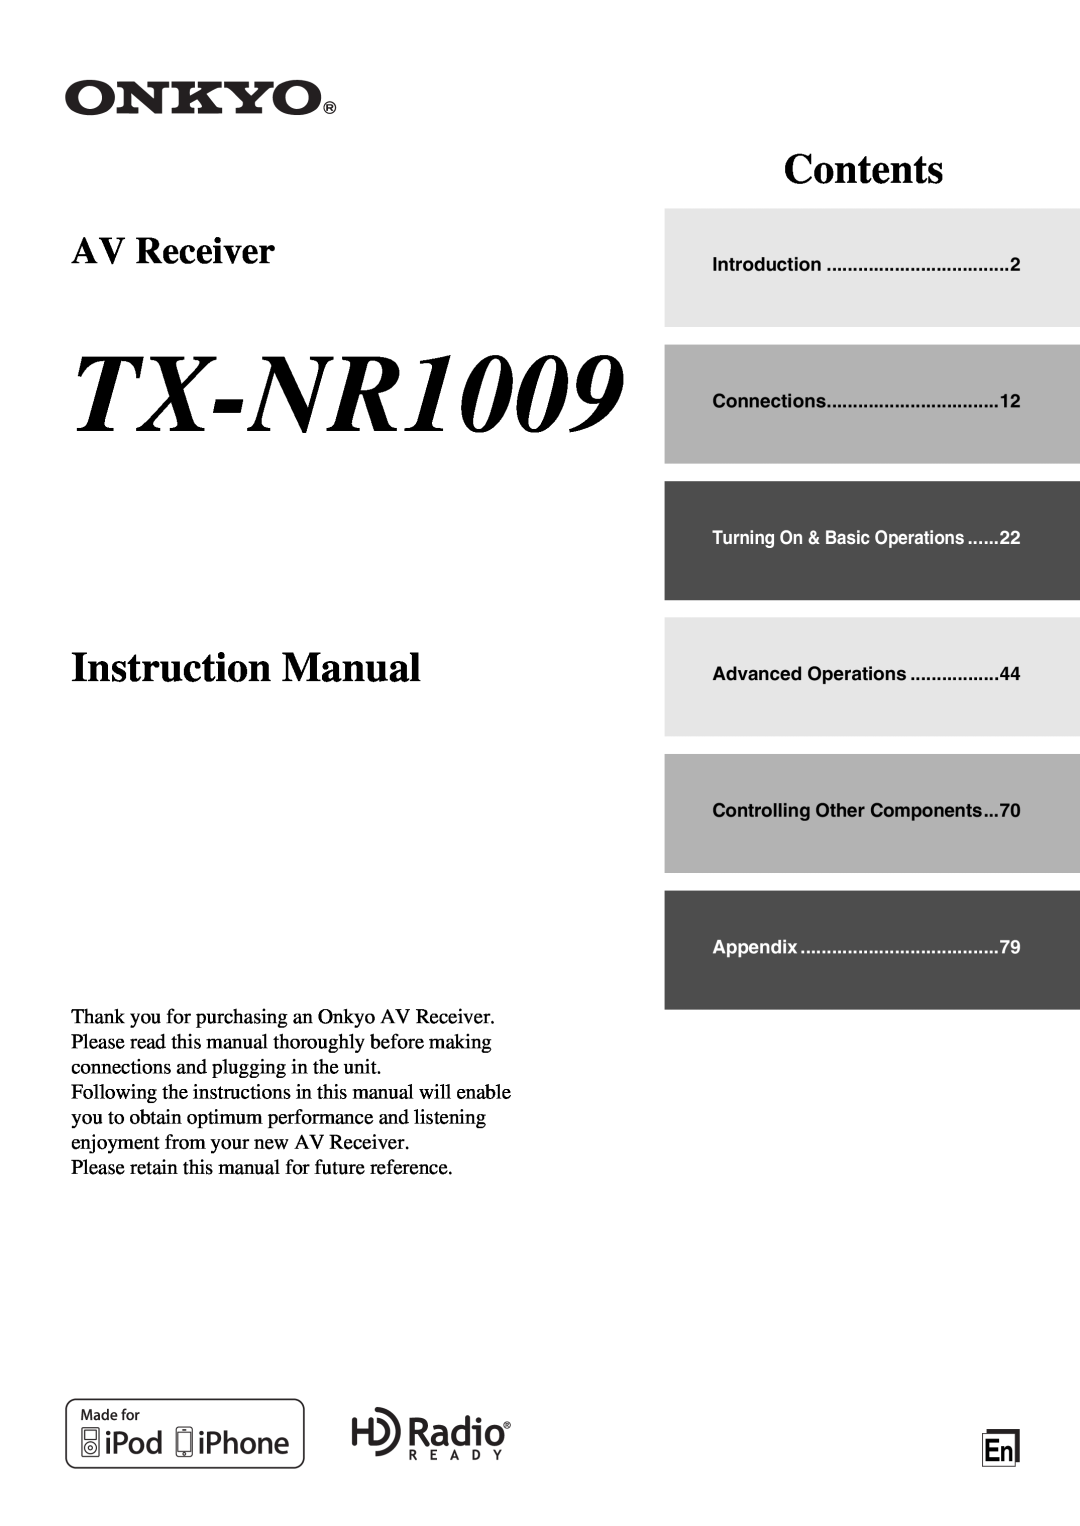 Onkyo TX-NR1009 instruction manual Contents, Instruction Manual, AV Receiver 